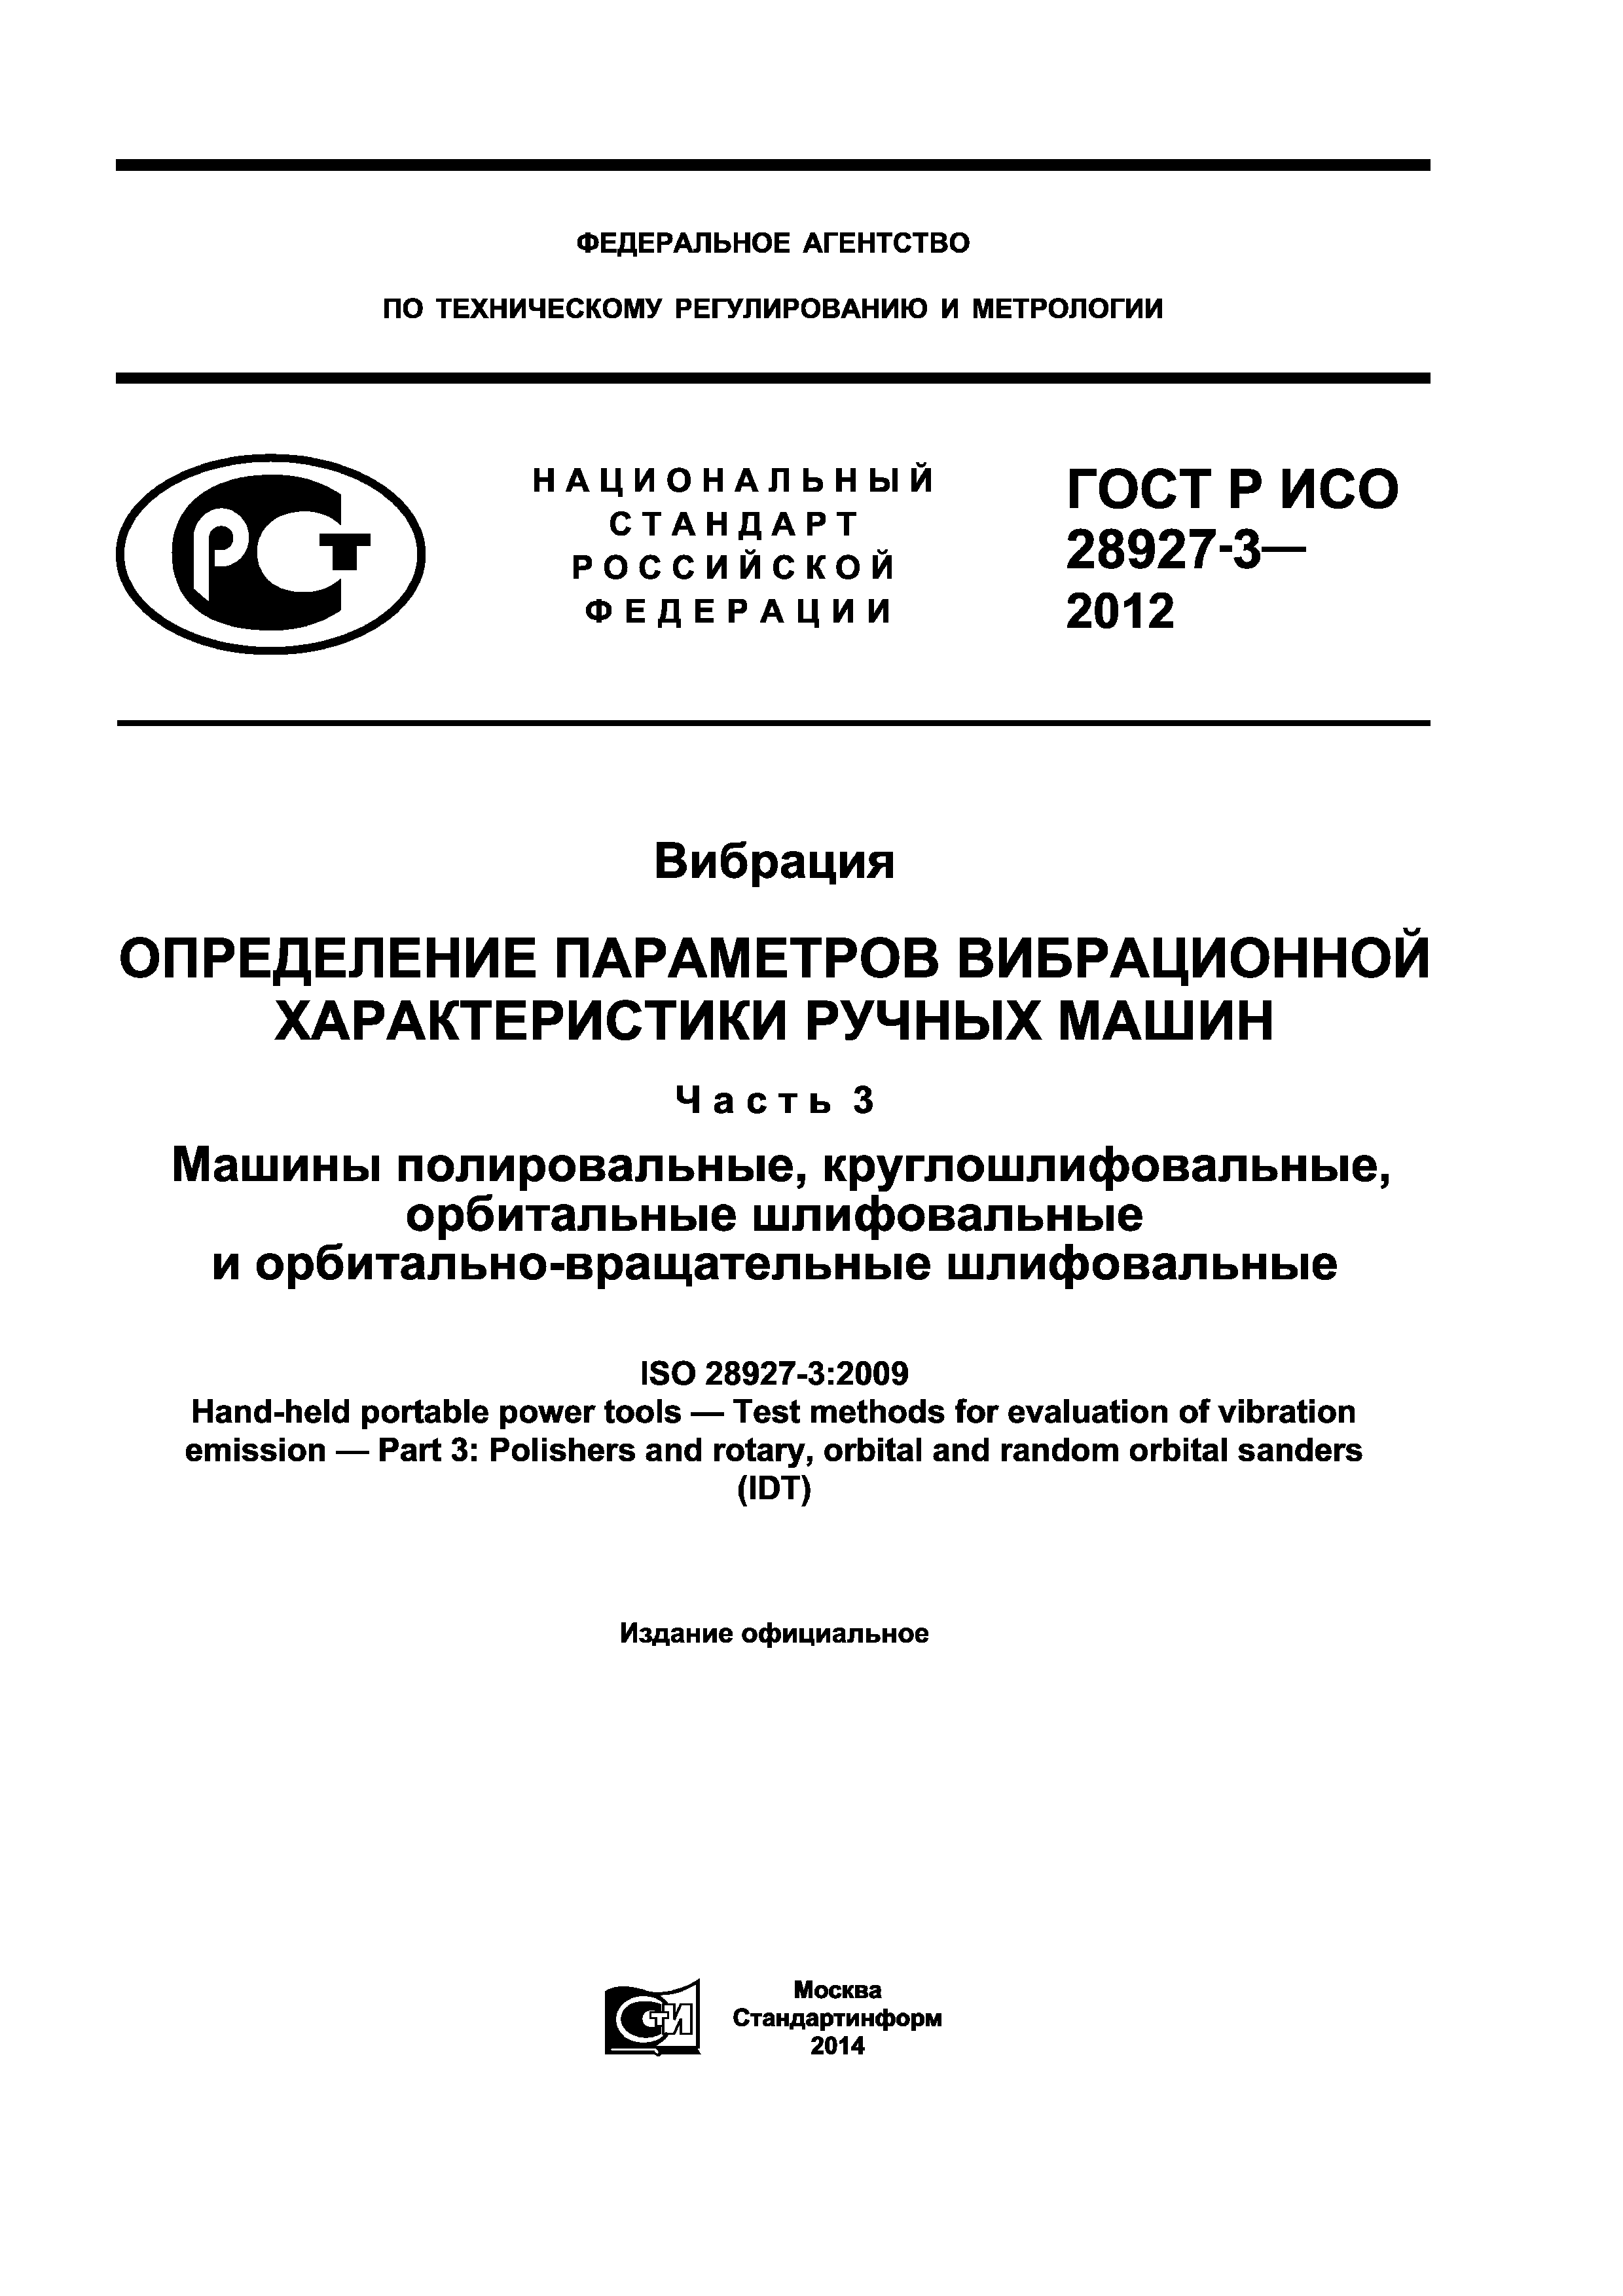 ГОСТ Р ИСО 28927-3-2012